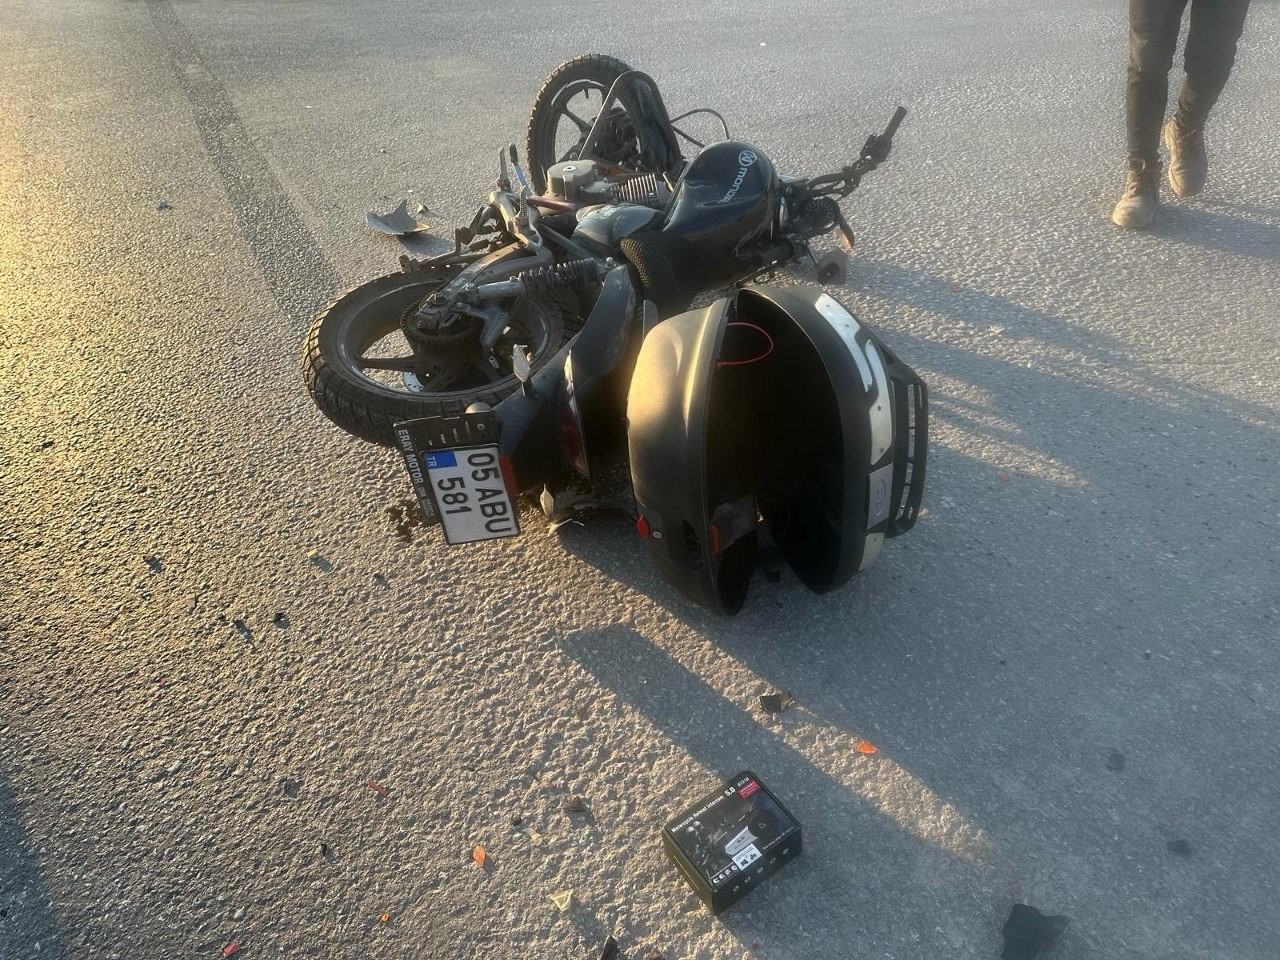 Kırmızı ışıkta geçen motosiklet, otomobille çarpıştı: 1 yaralı
